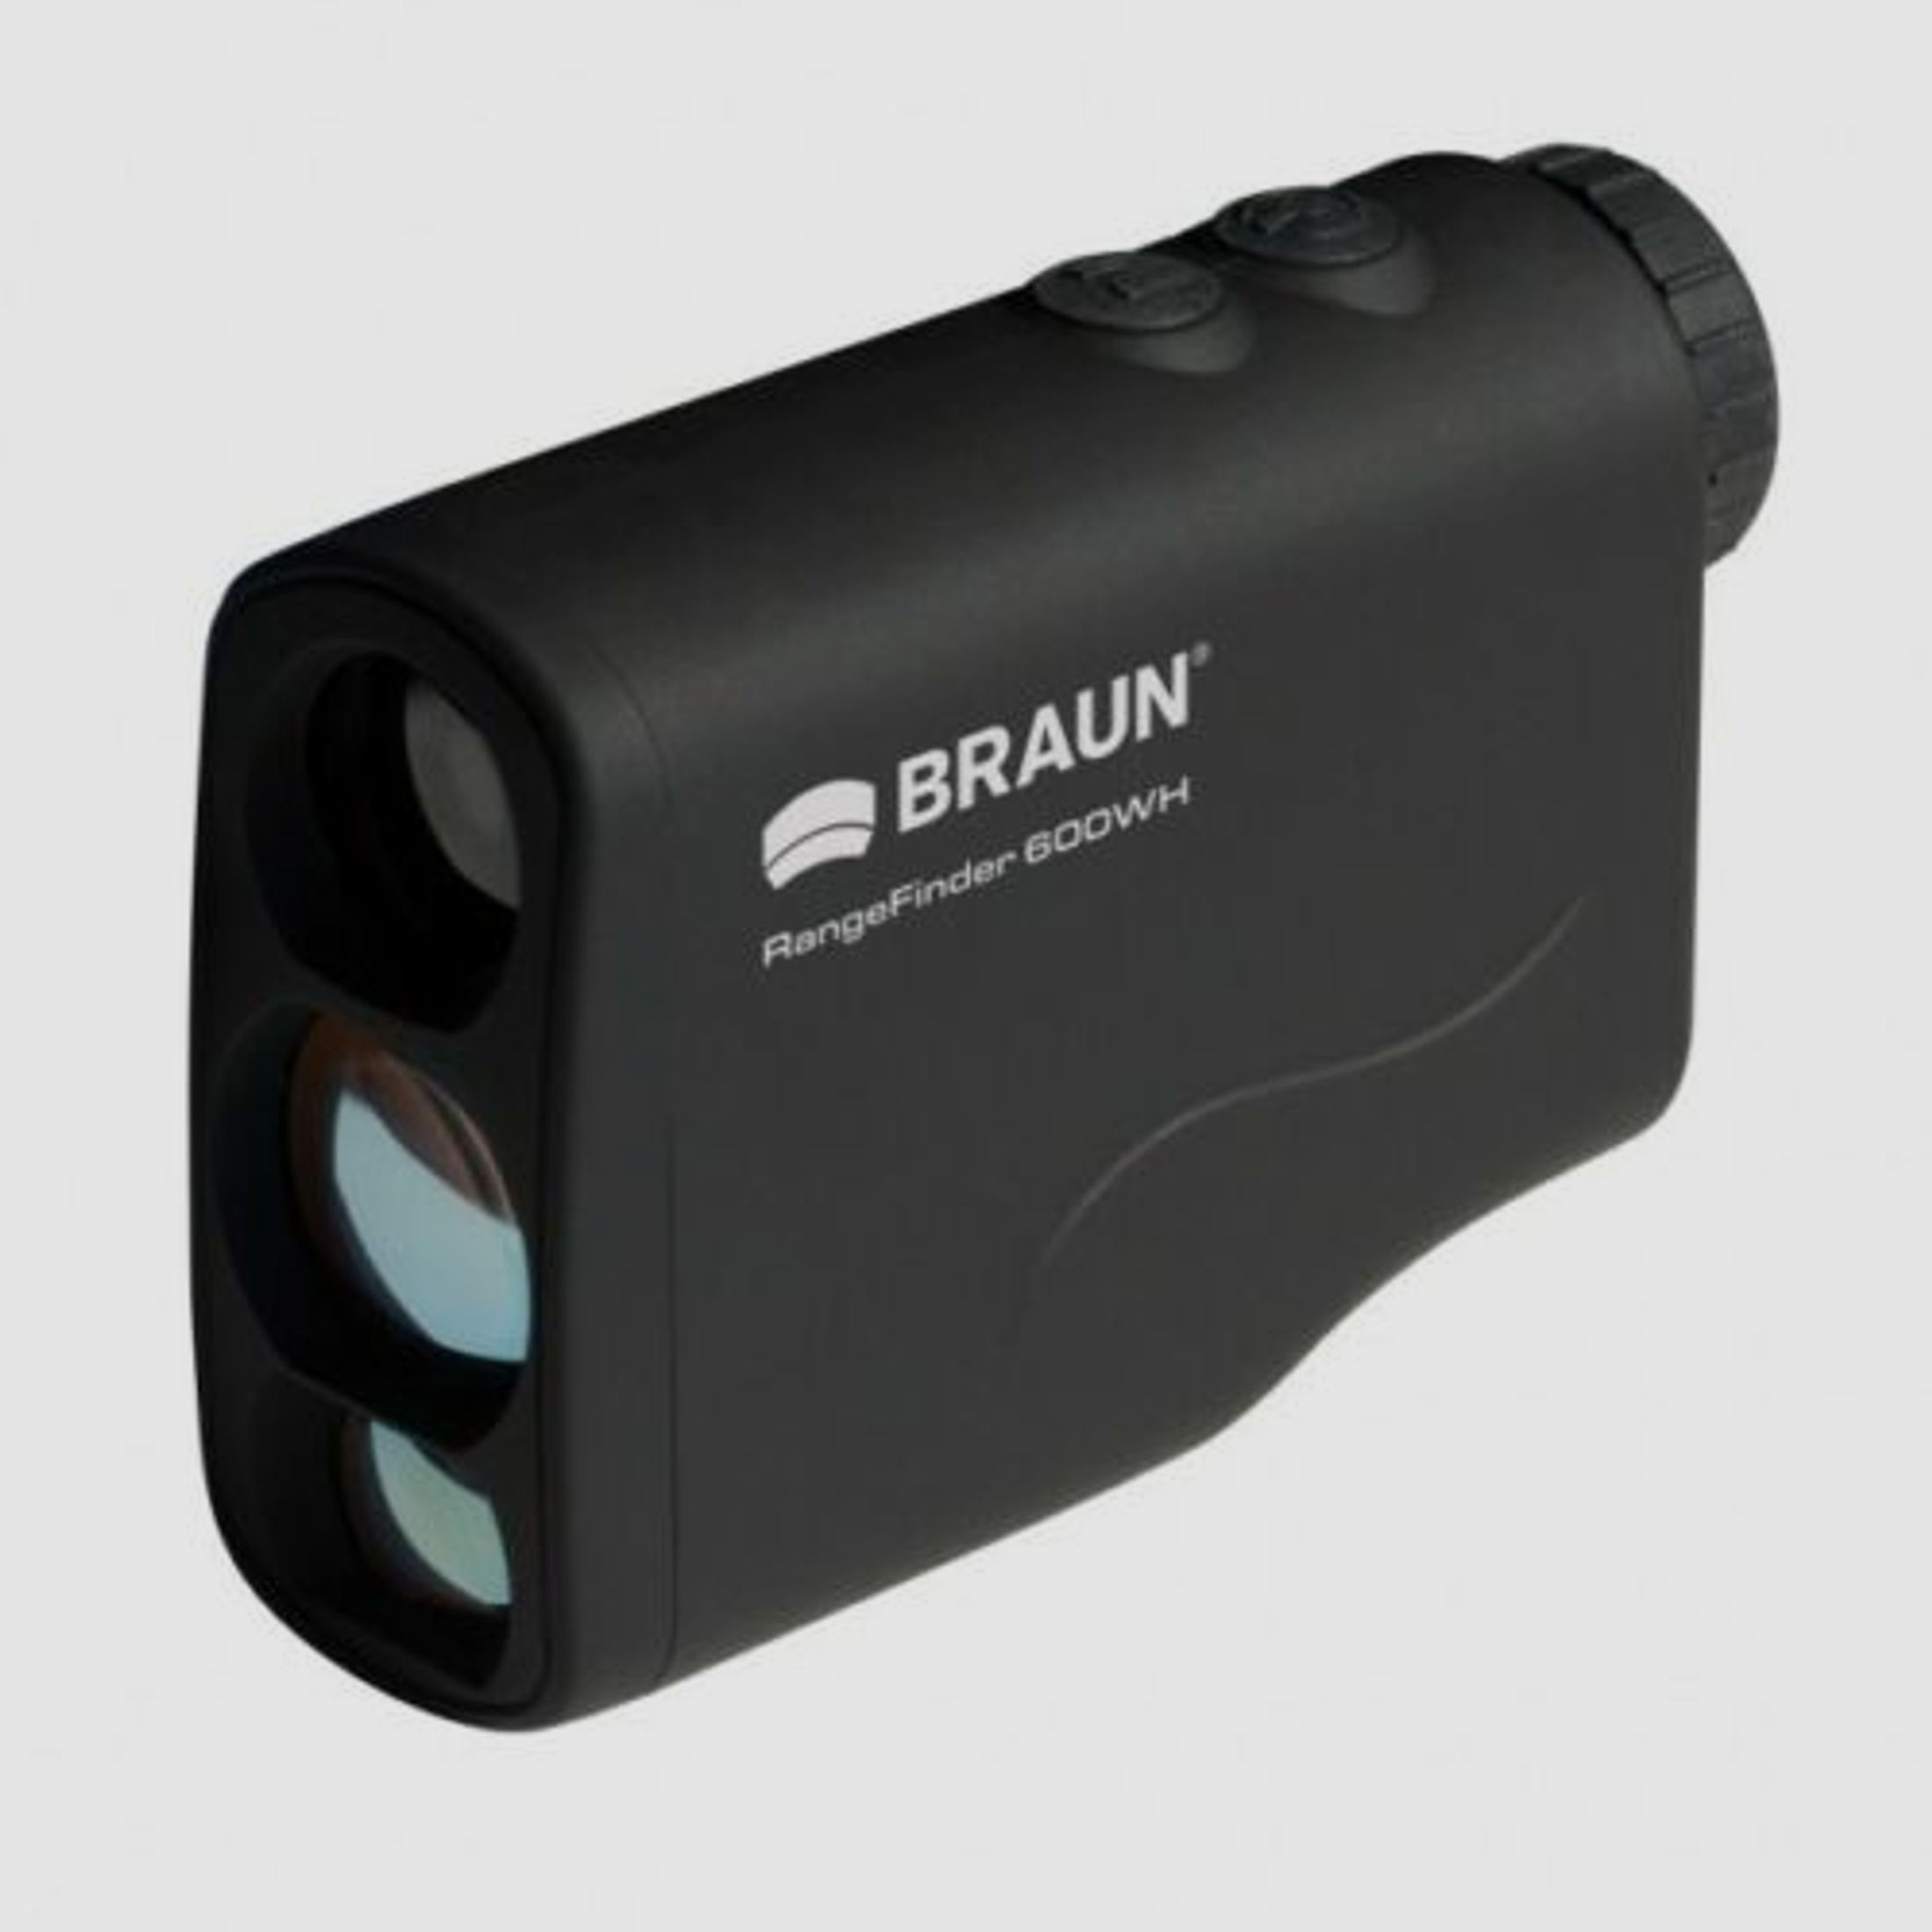 Braun 20175 Rangefinder Laser Entfernungsmesser 600 WH von 4m bis 600m 6x Vergrößerung